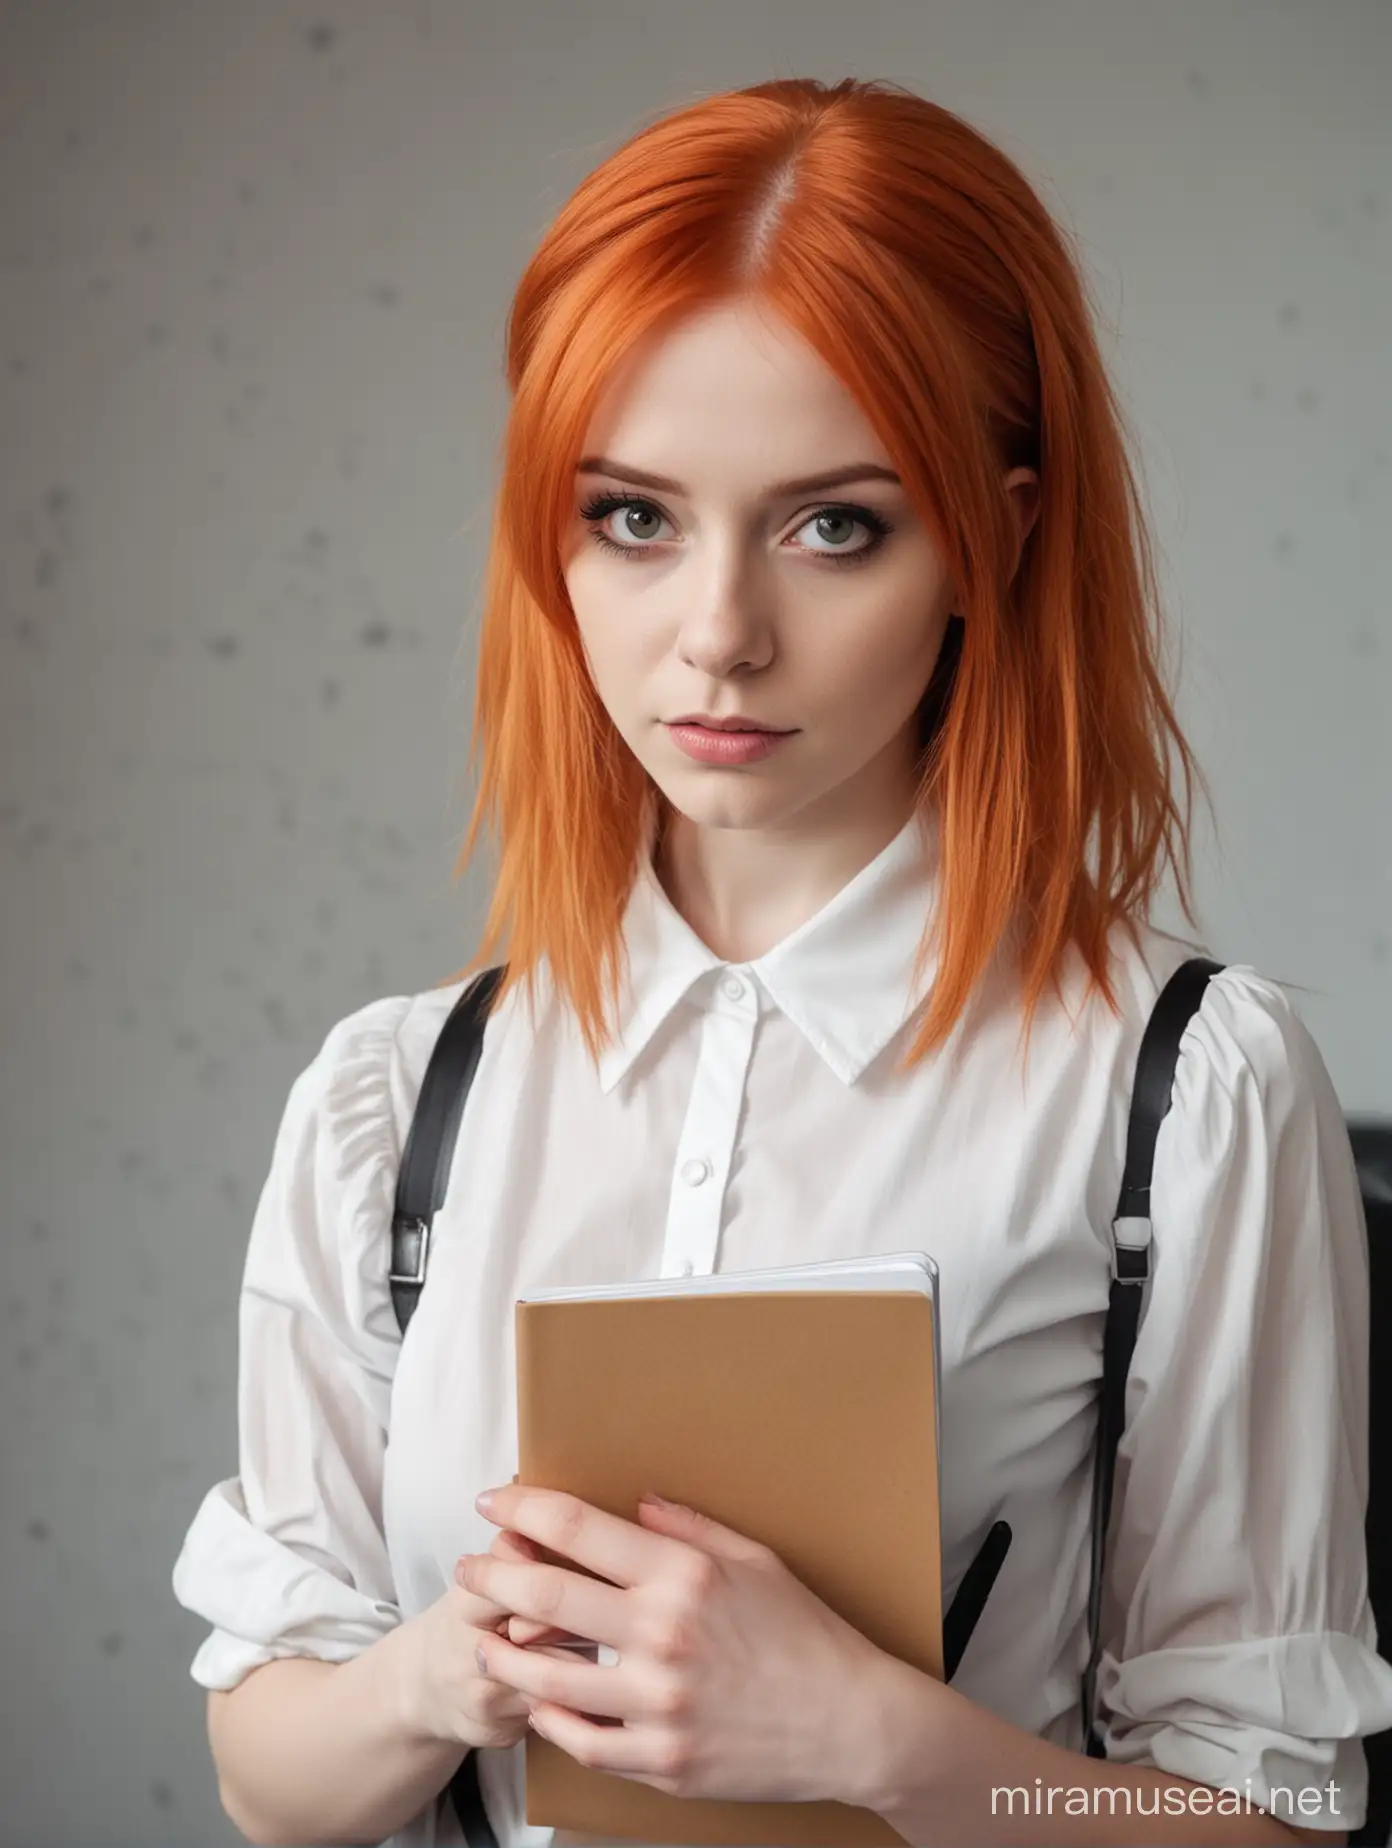 страшная девушка, бледно-рыжие волосы, стоит на фоне офиса, в руках блокнот